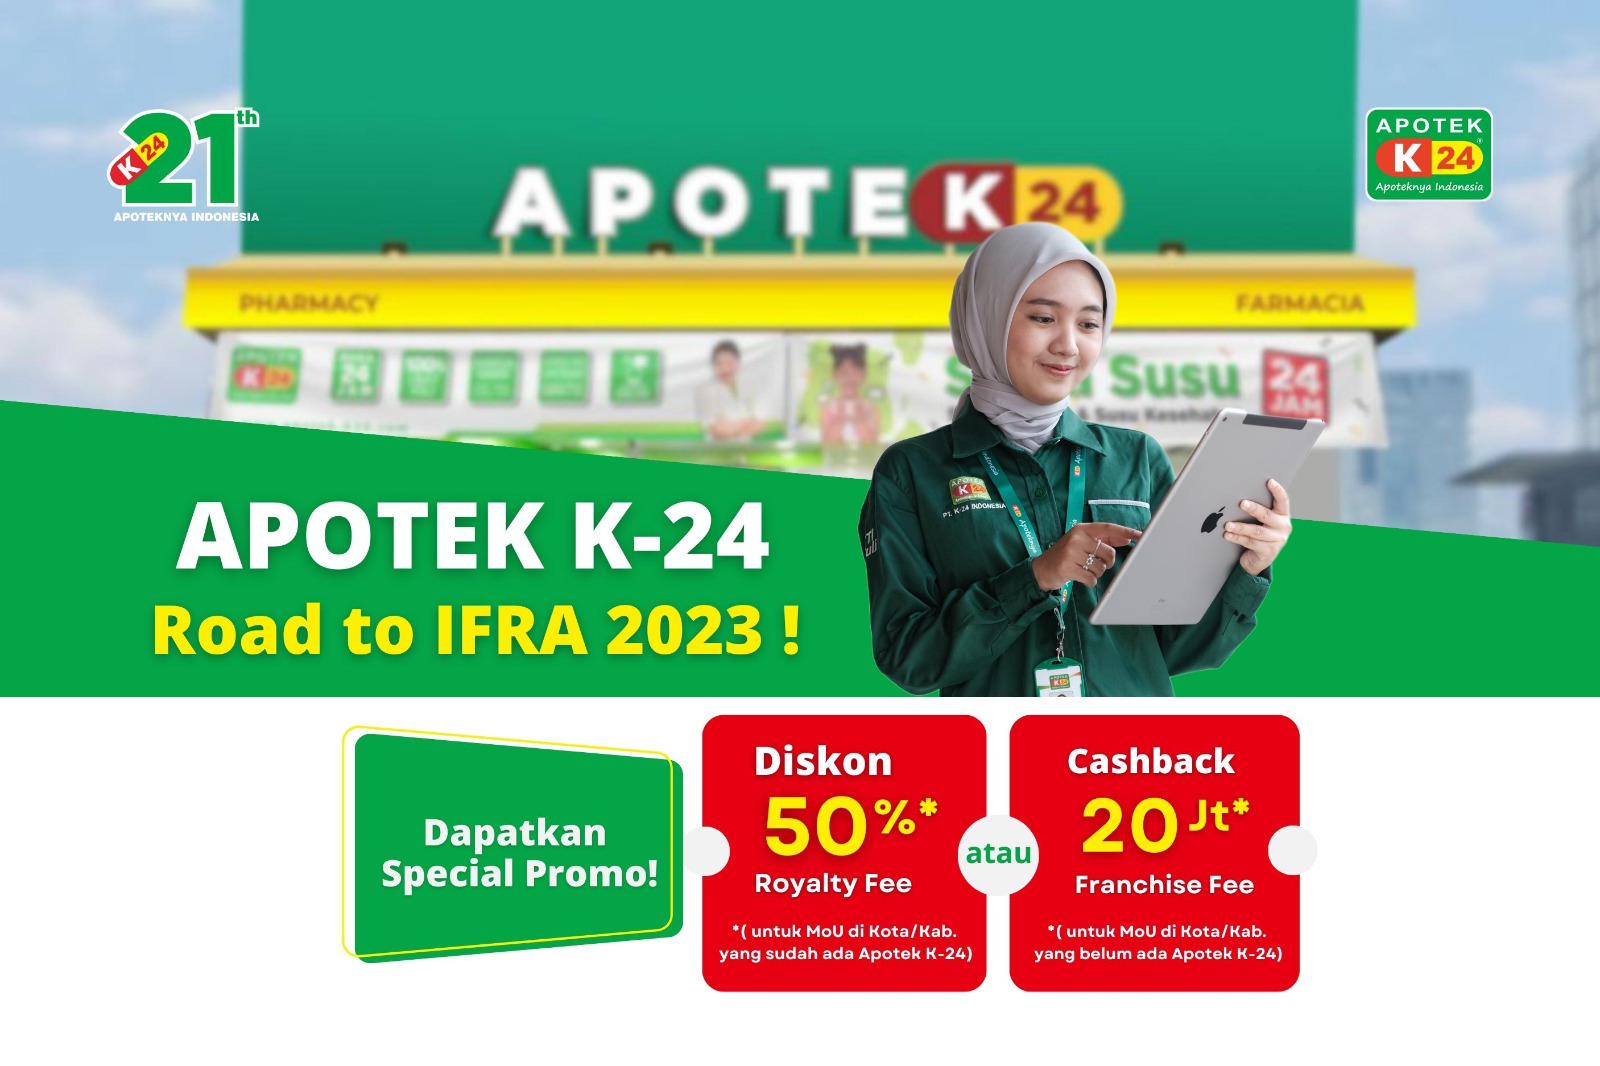 Hadir di IFRA Expo 2023, Apotek K-24 Berikan Promo Menarik!